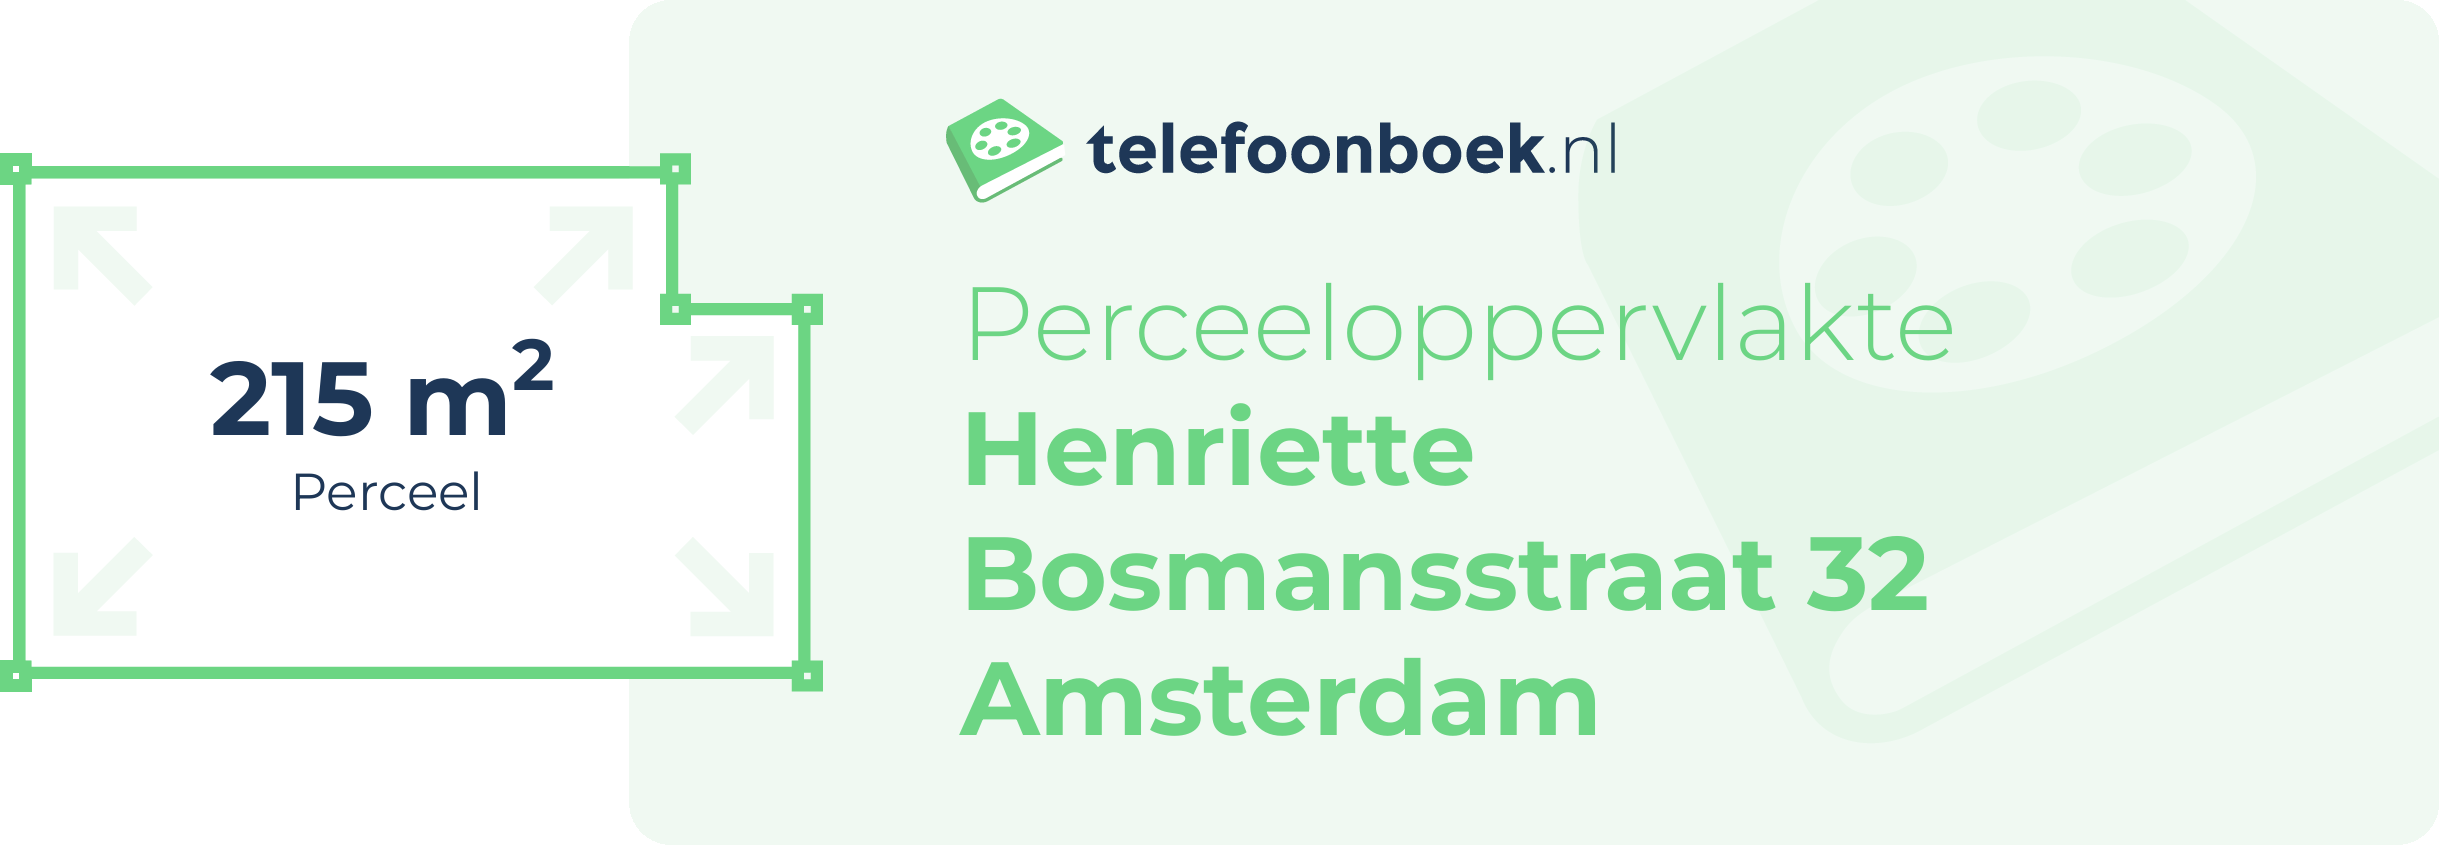 Perceeloppervlakte Henriette Bosmansstraat 32 Amsterdam